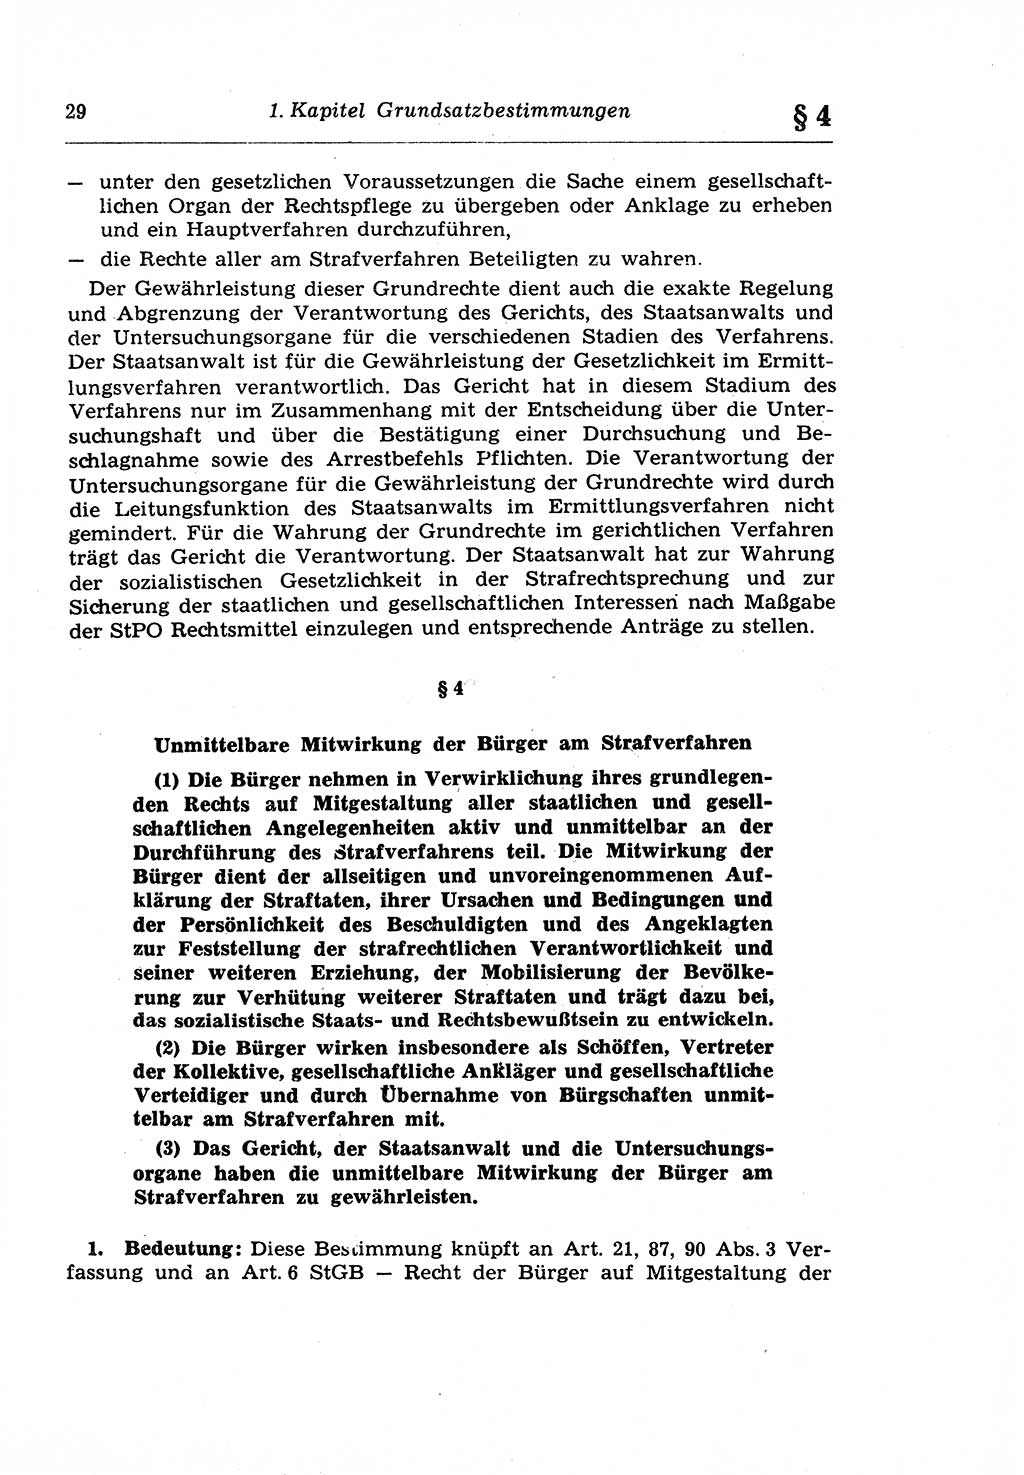 Strafprozeßrecht der DDR (Deutsche Demokratische Republik), Lehrkommentar zur Strafprozeßordnung (StPO) 1968, Seite 29 (Strafprozeßr. DDR Lehrkomm. StPO 19688, S. 29)